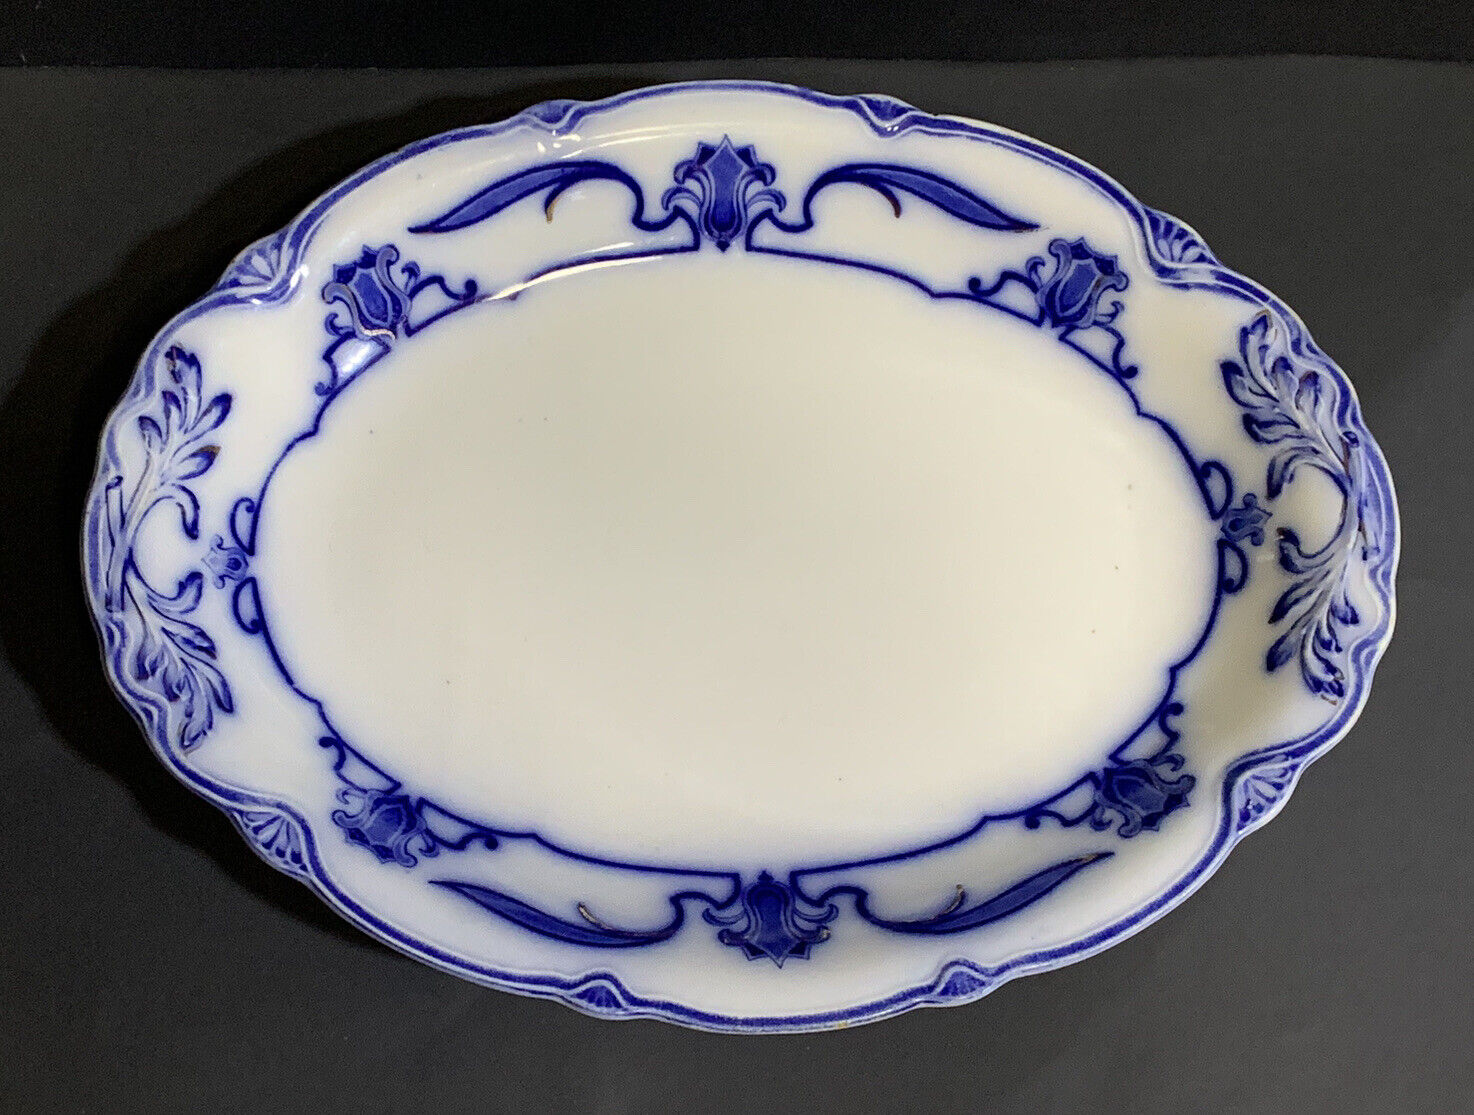 RARE 1891 GRINDLEY England 14” FLOW BLUE Gold LOTUS Oval Porcelain PLATTER Plate